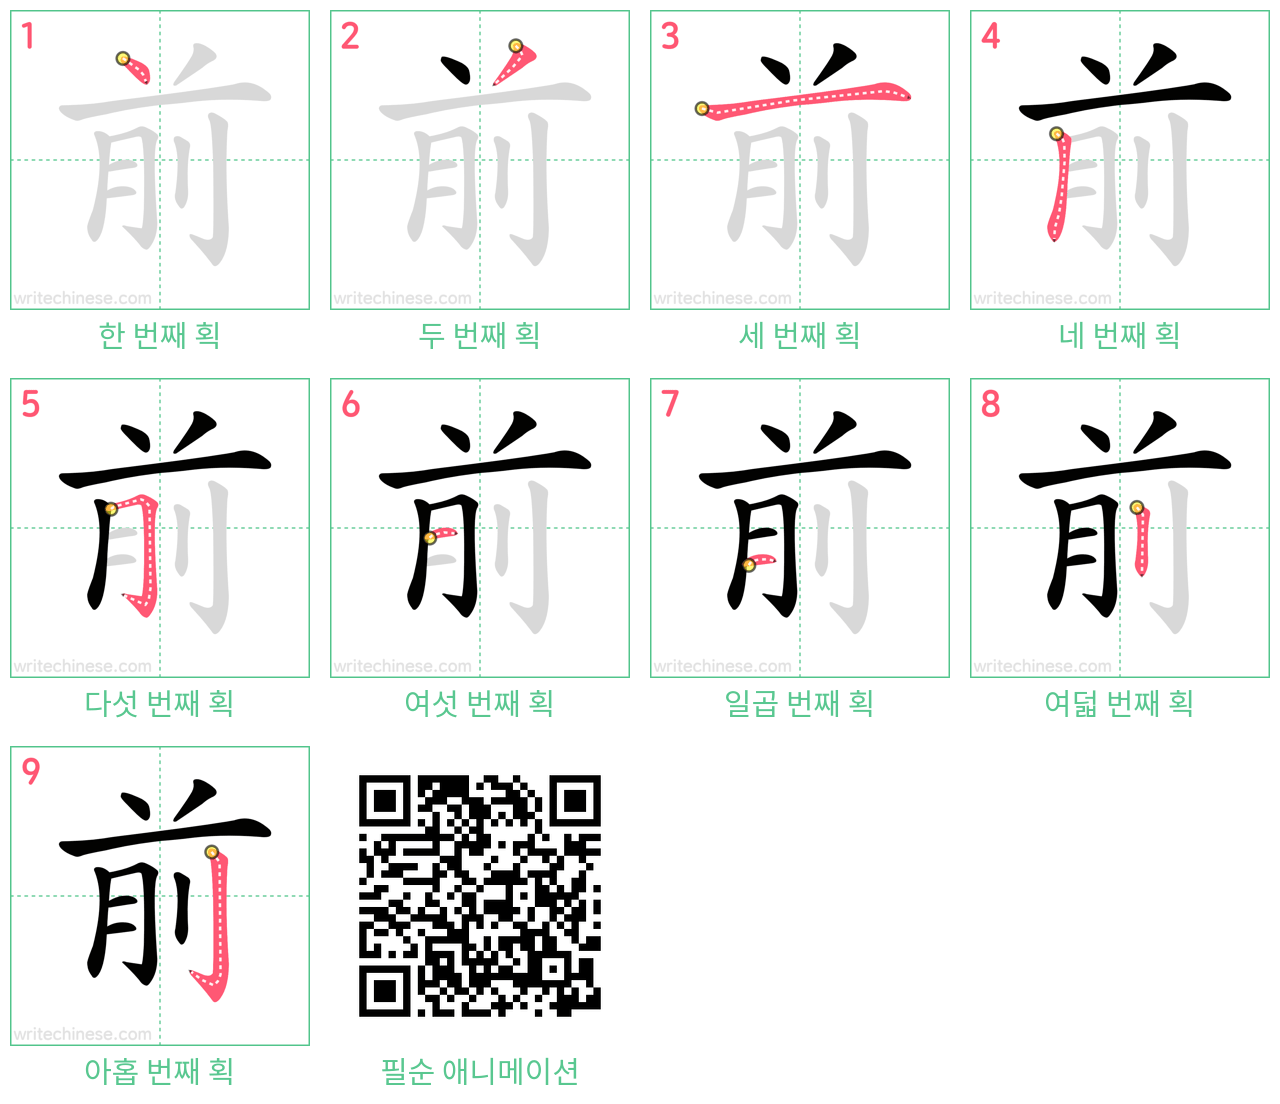 前 step-by-step stroke order diagrams